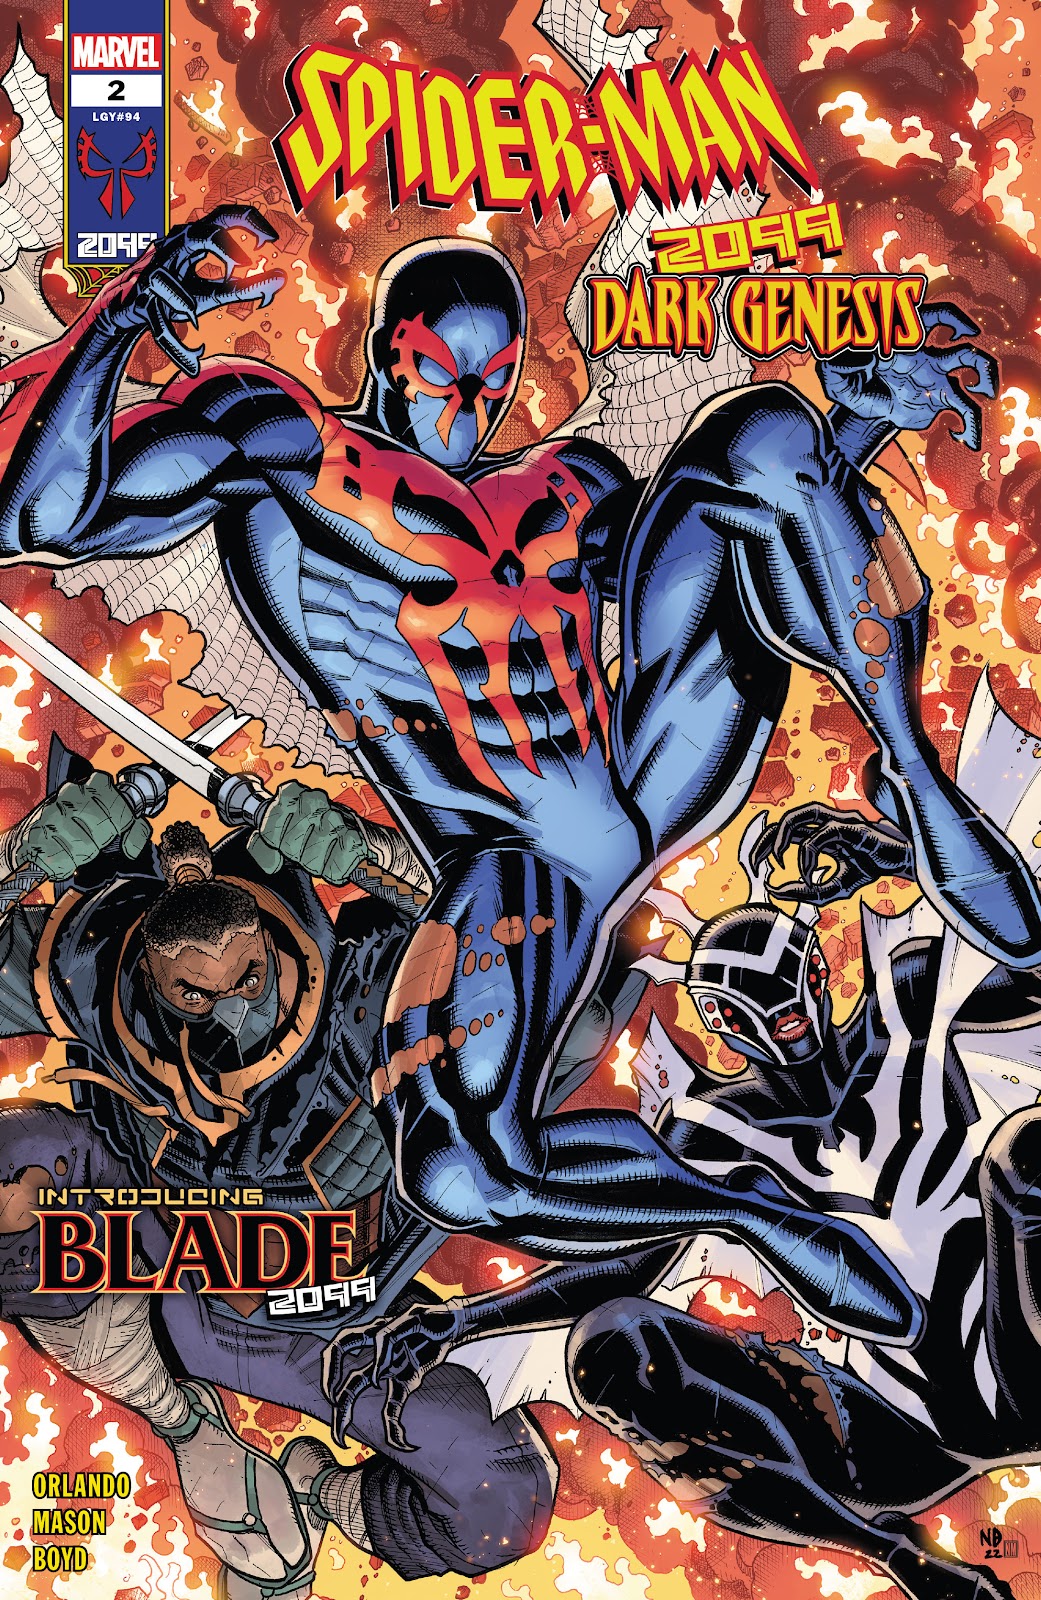 Spider-Man 2099: Dark Genesis issue 2 - Page 1